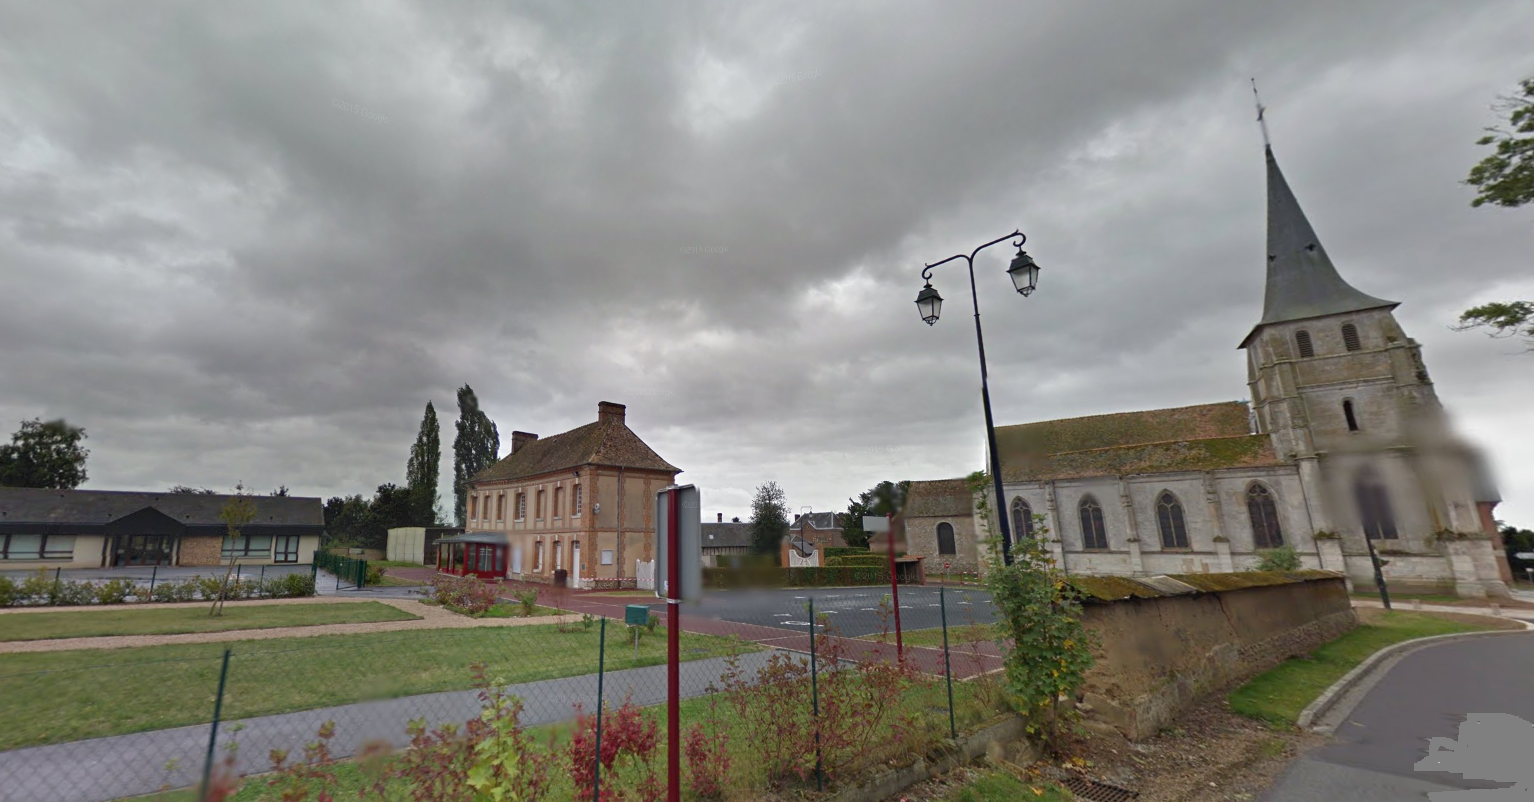 Saint-Aubin-d'Ecrosville, près du Neubourg (Eure) : son clocher, sa mairie ...et son école qui remporte le 1er prix du concours "Voyages en ville", ex-æquo avec l'école élémentaire de Fresnoy-Folny (Seine-Maritime)